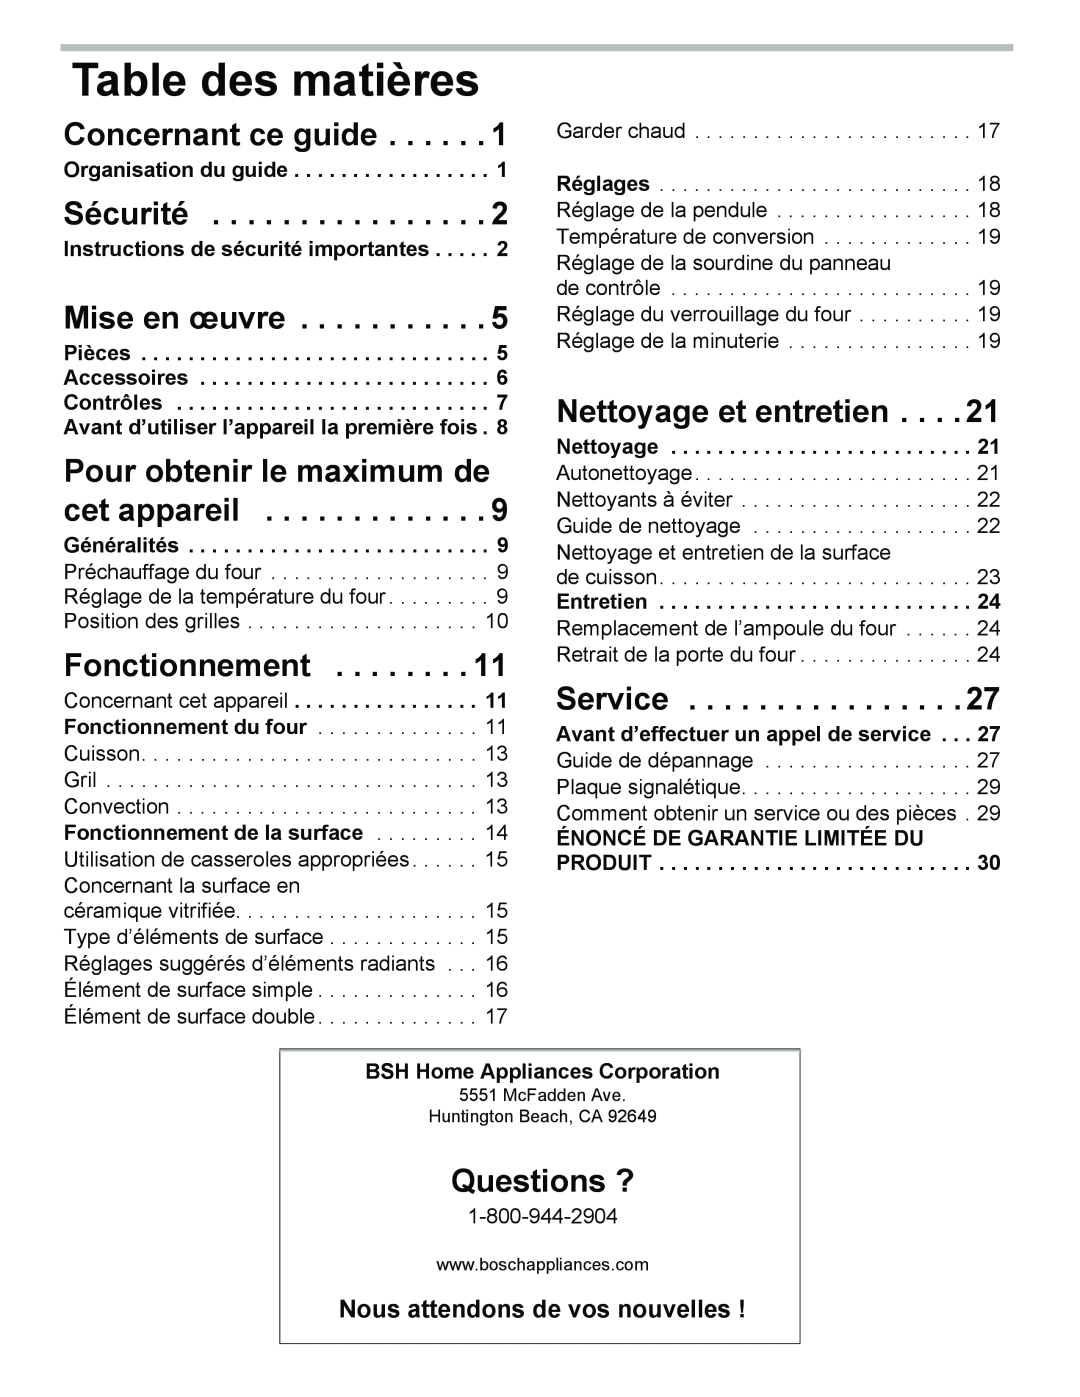 Bosch Appliances HES3053U Table des matières, Concernant ce guide, Sécurité, Mise en œuvre, Fonctionnement, Questions ? 